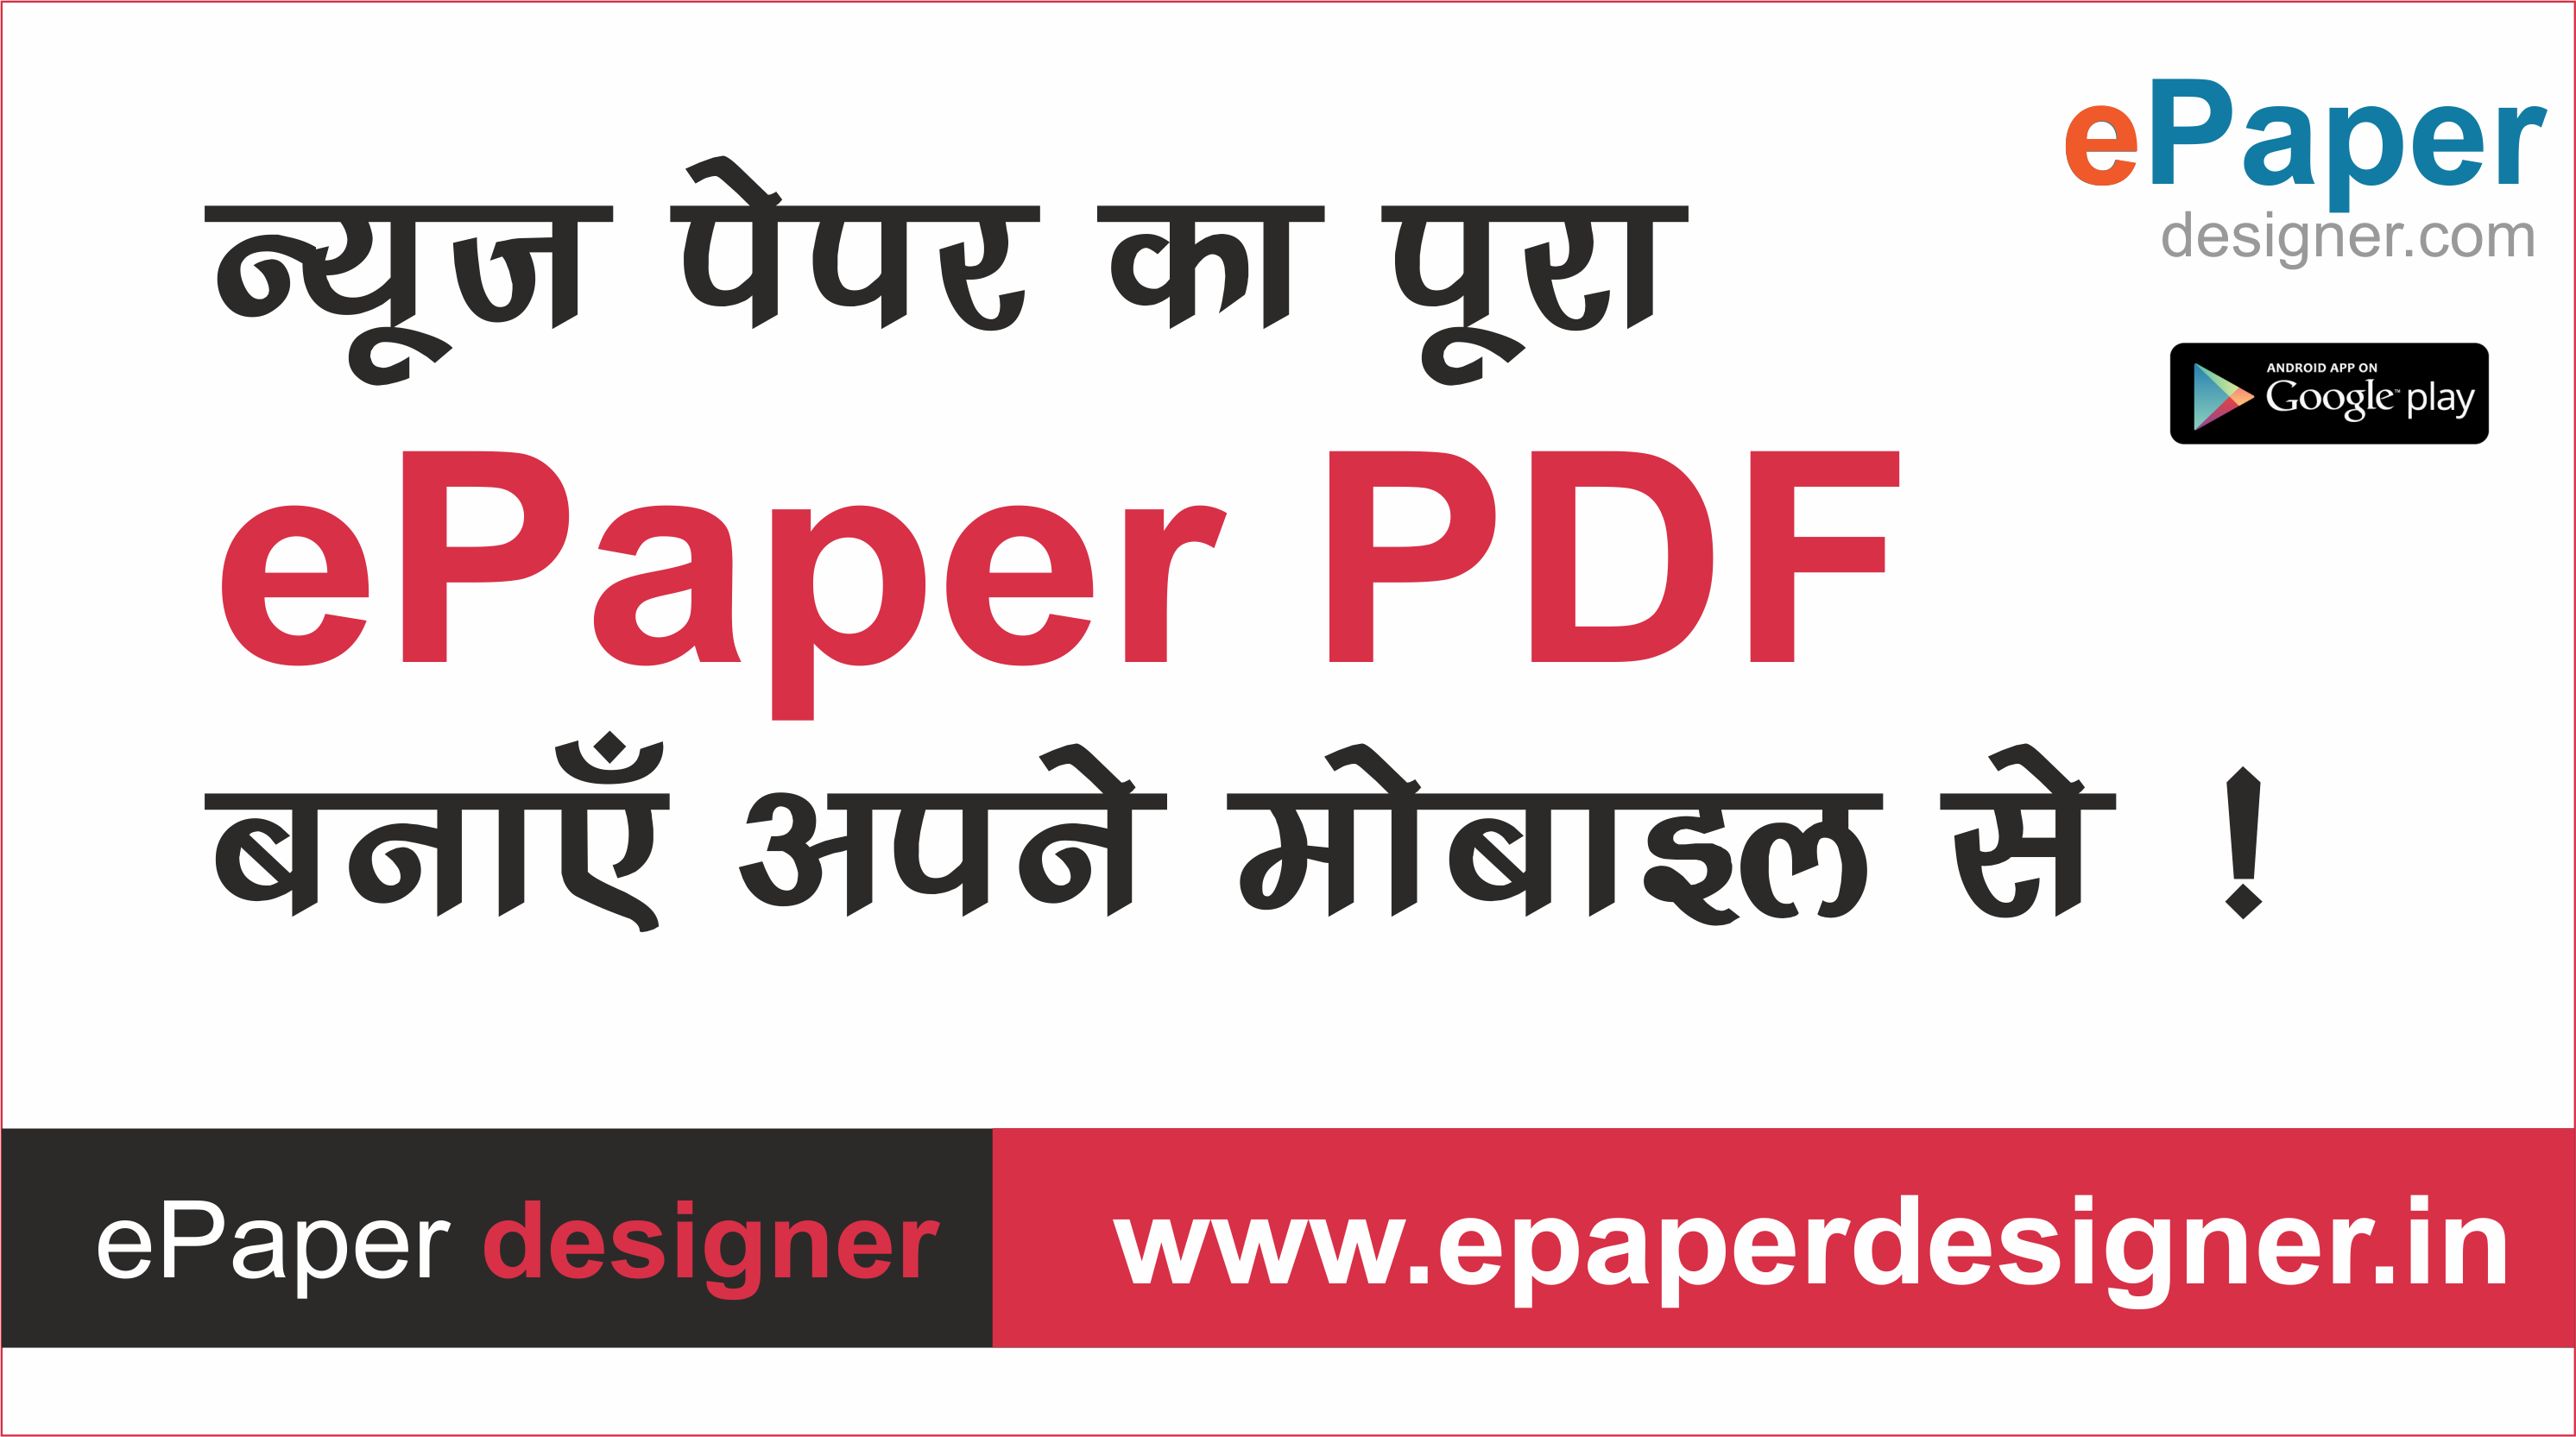 ePaper designer app